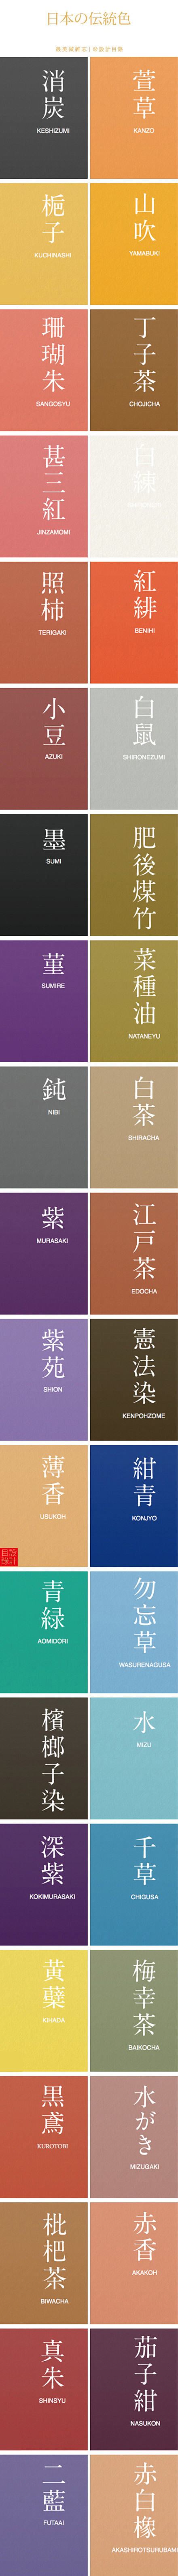 色彩日本传统名称